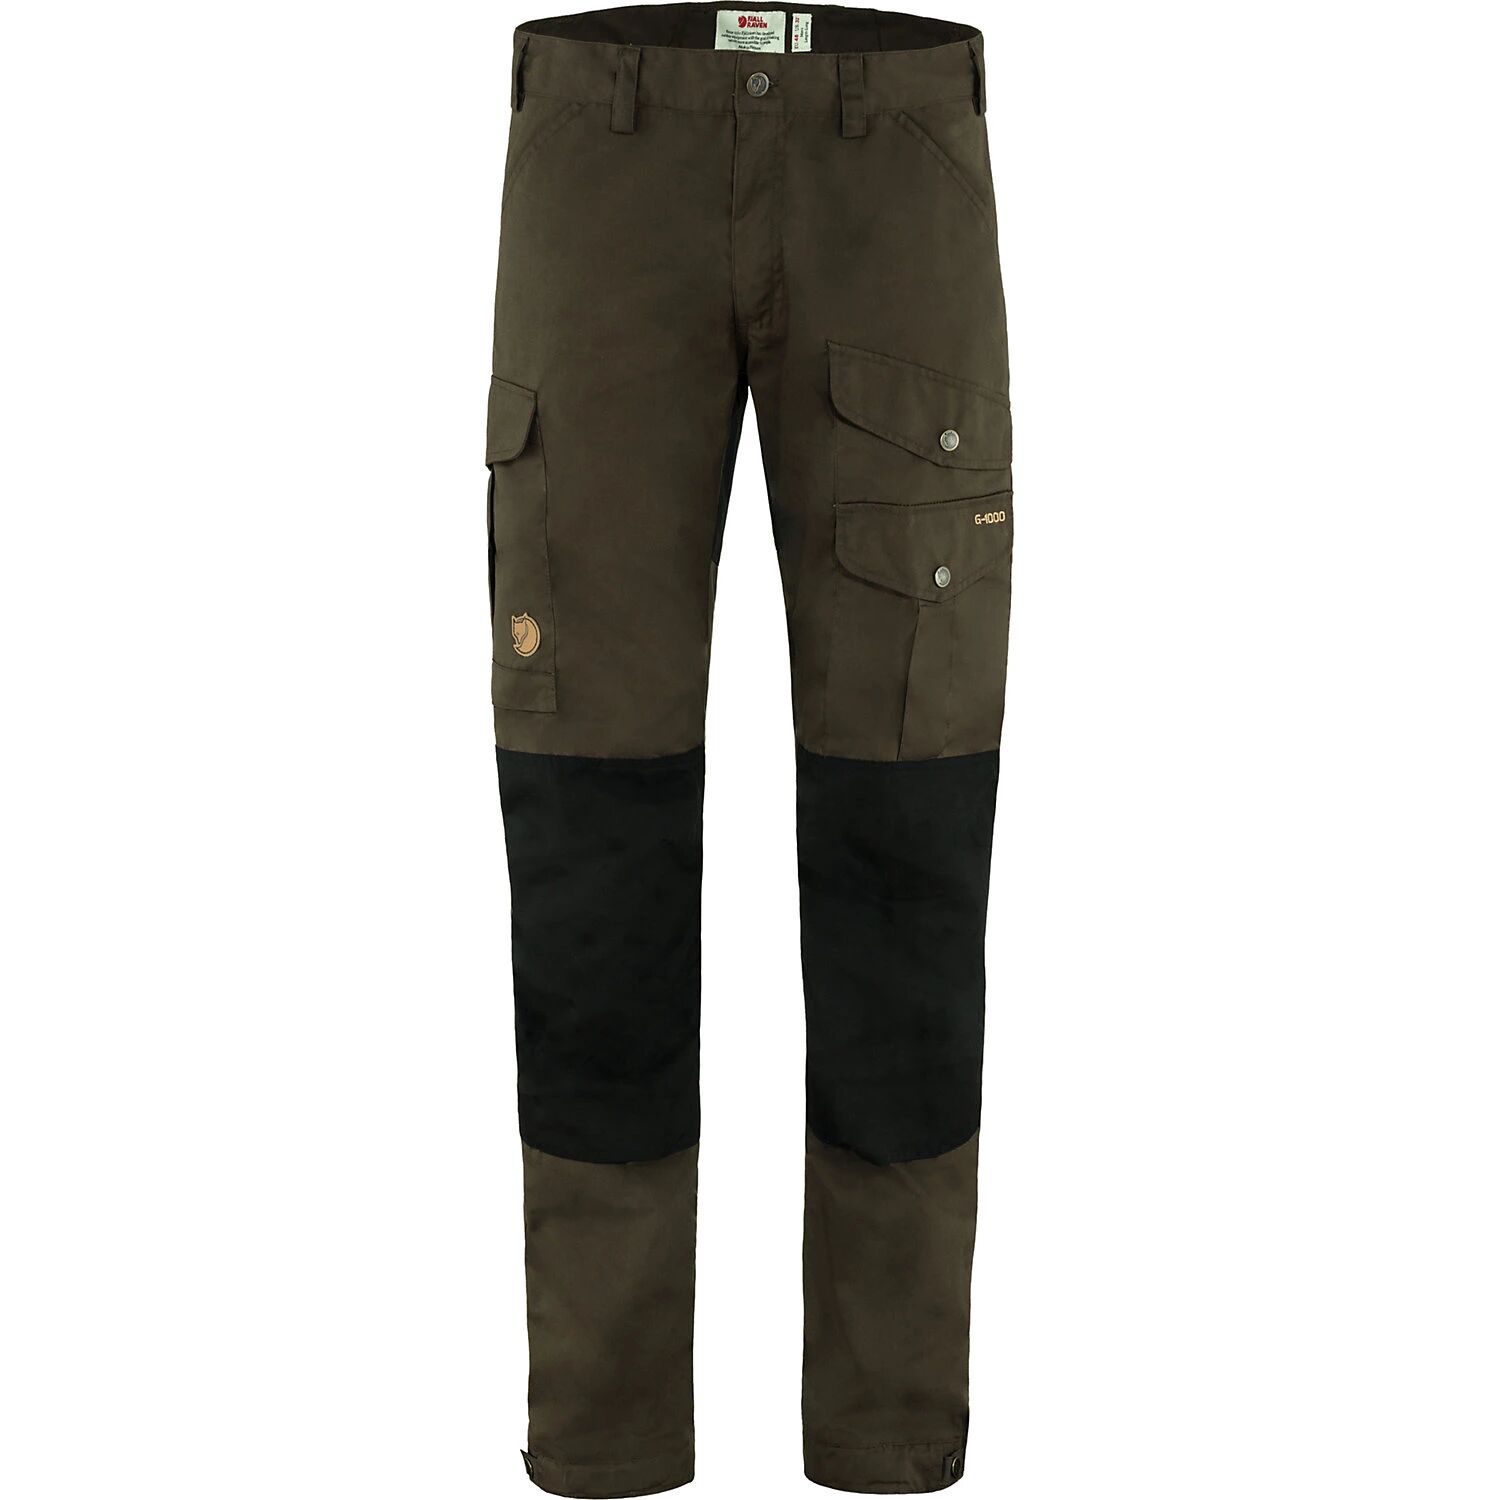 Fjallraven Men's Vidda Pro Trouser, Size 36, Brown